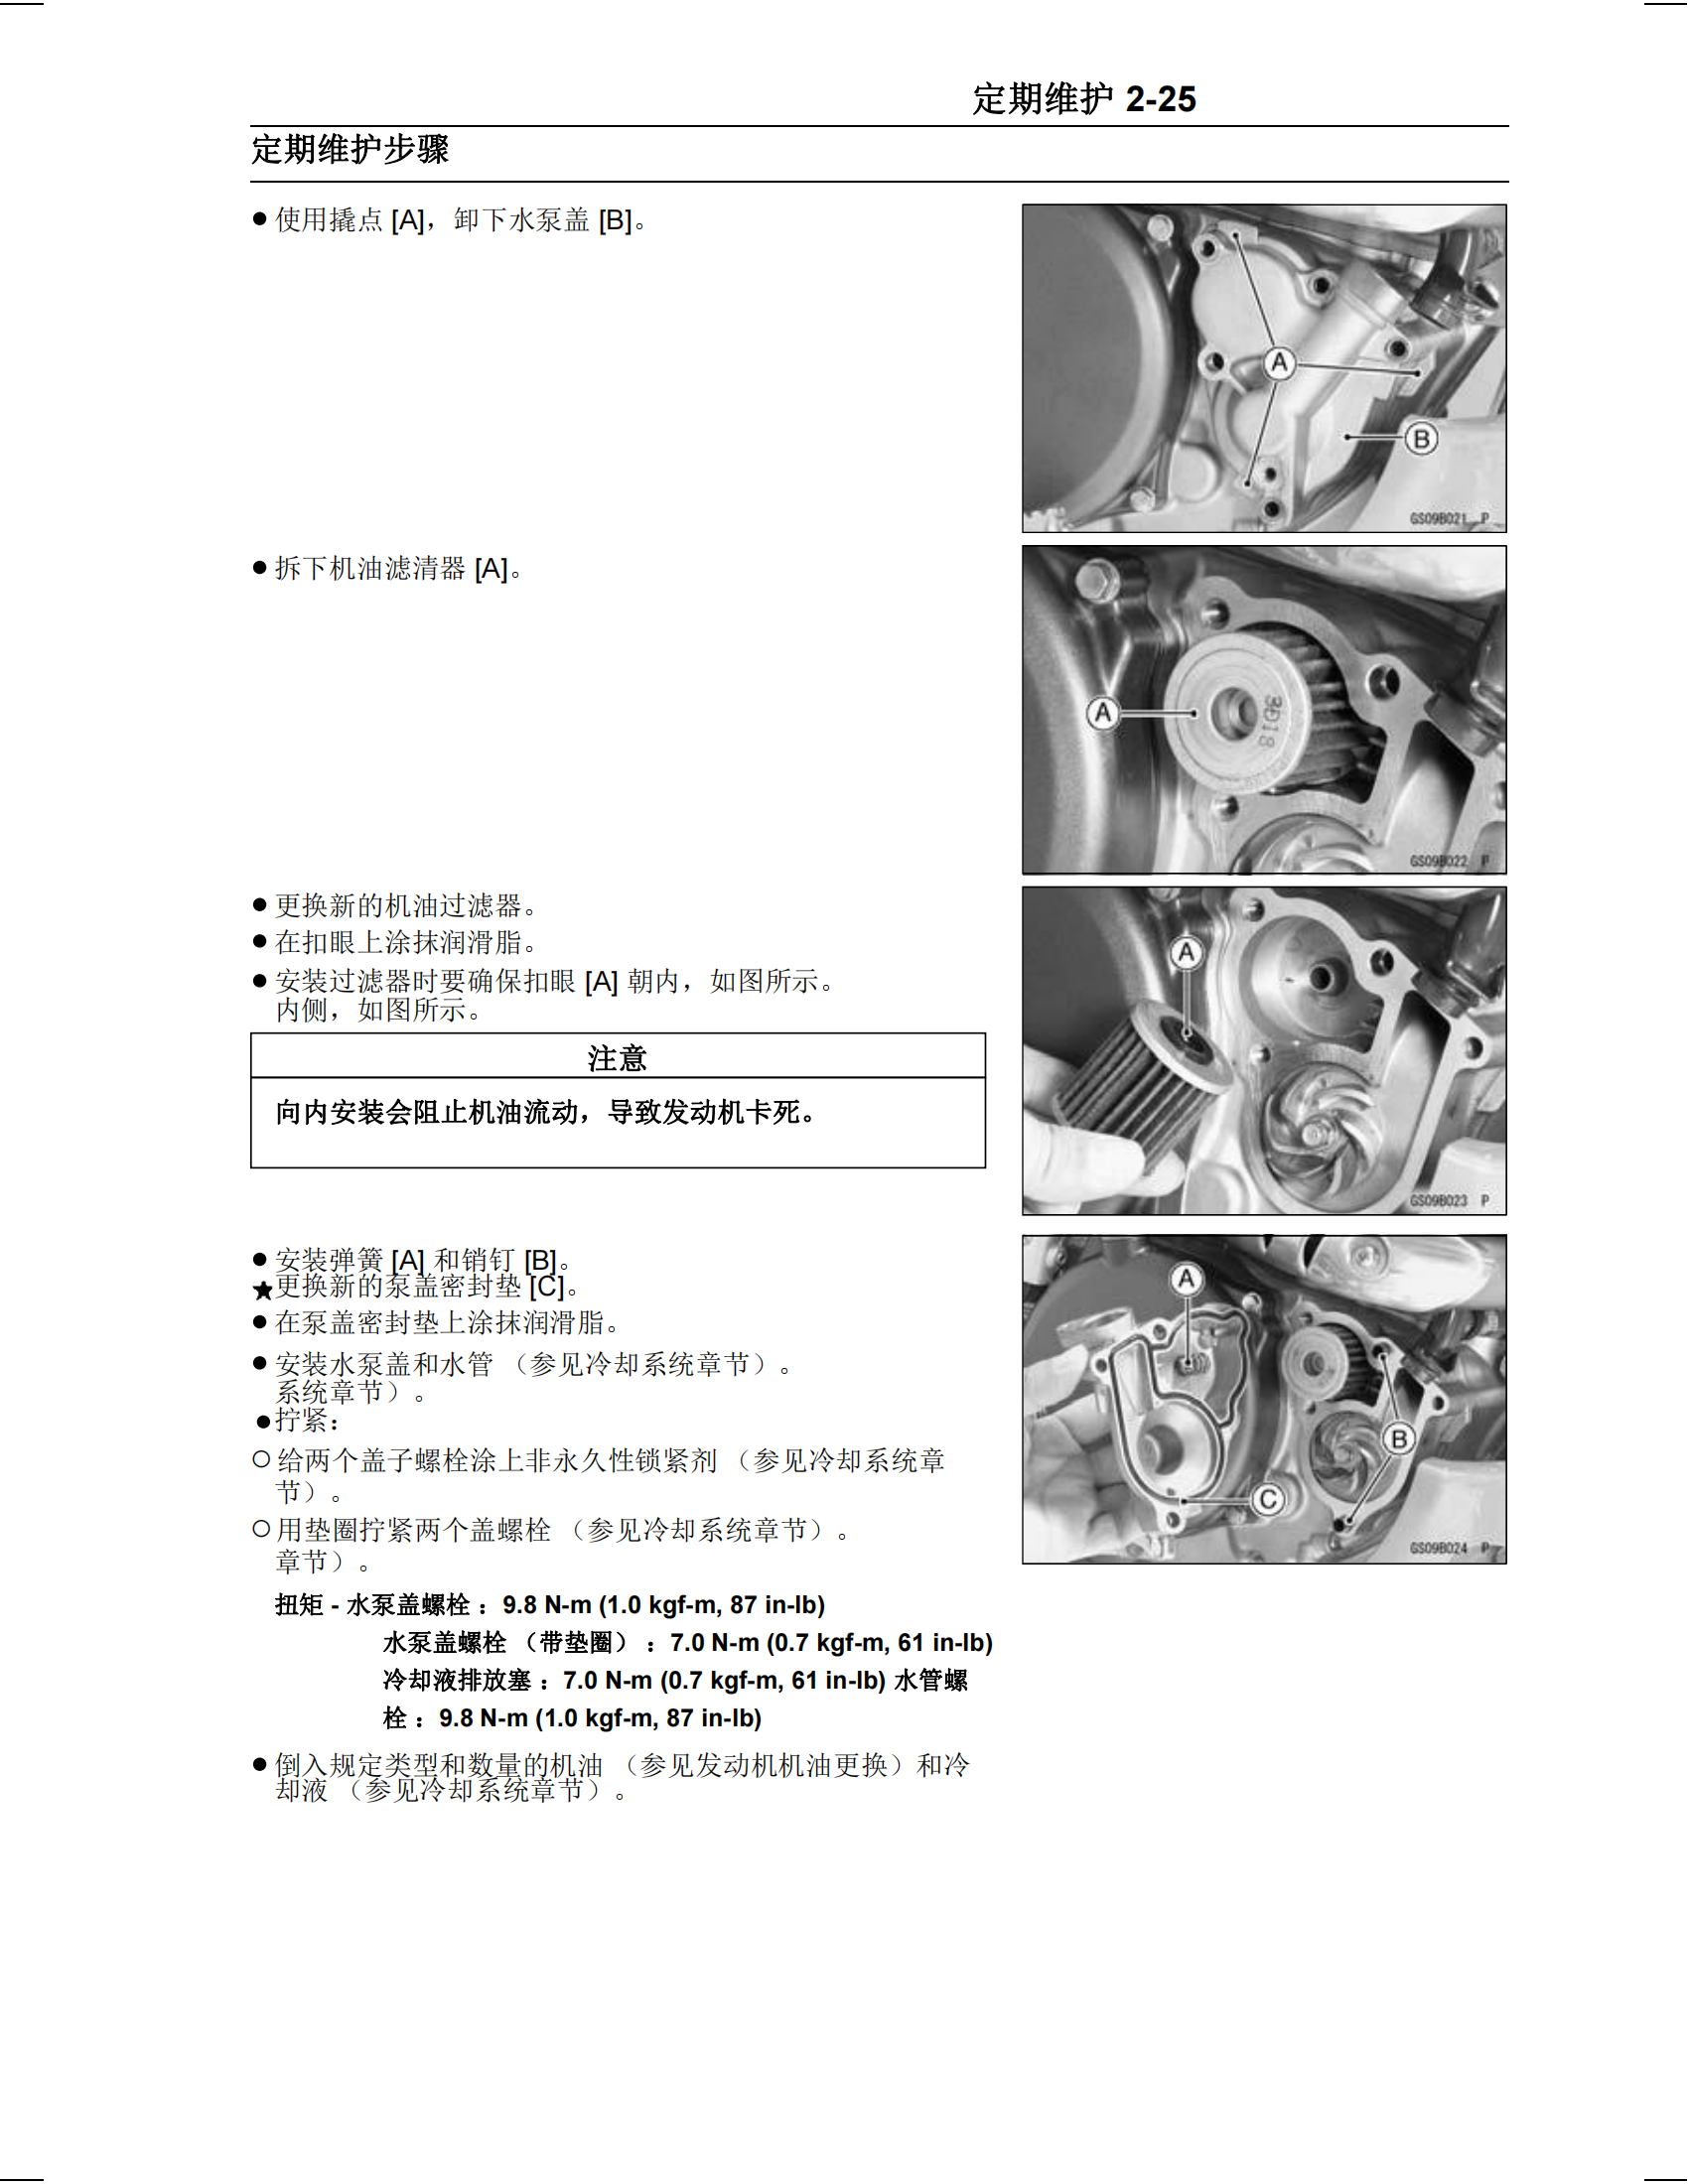 简体中文2004-2005年川崎kx250f维修手册 kawasaki kx250f维修手册插图4